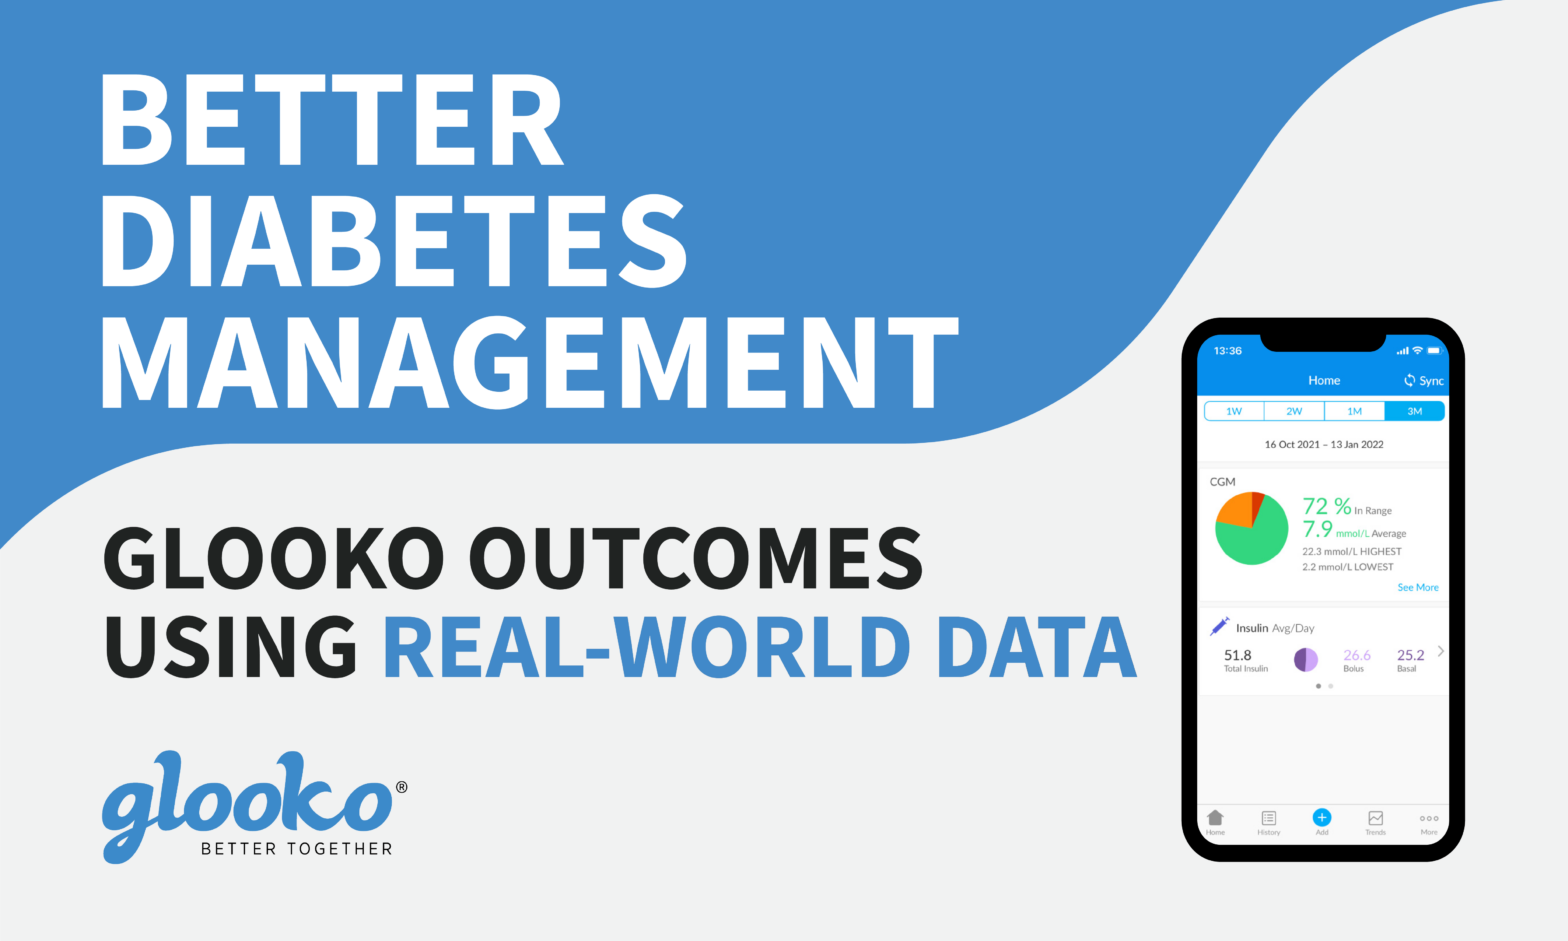 Glooko: Better Diabetes Management Infographic